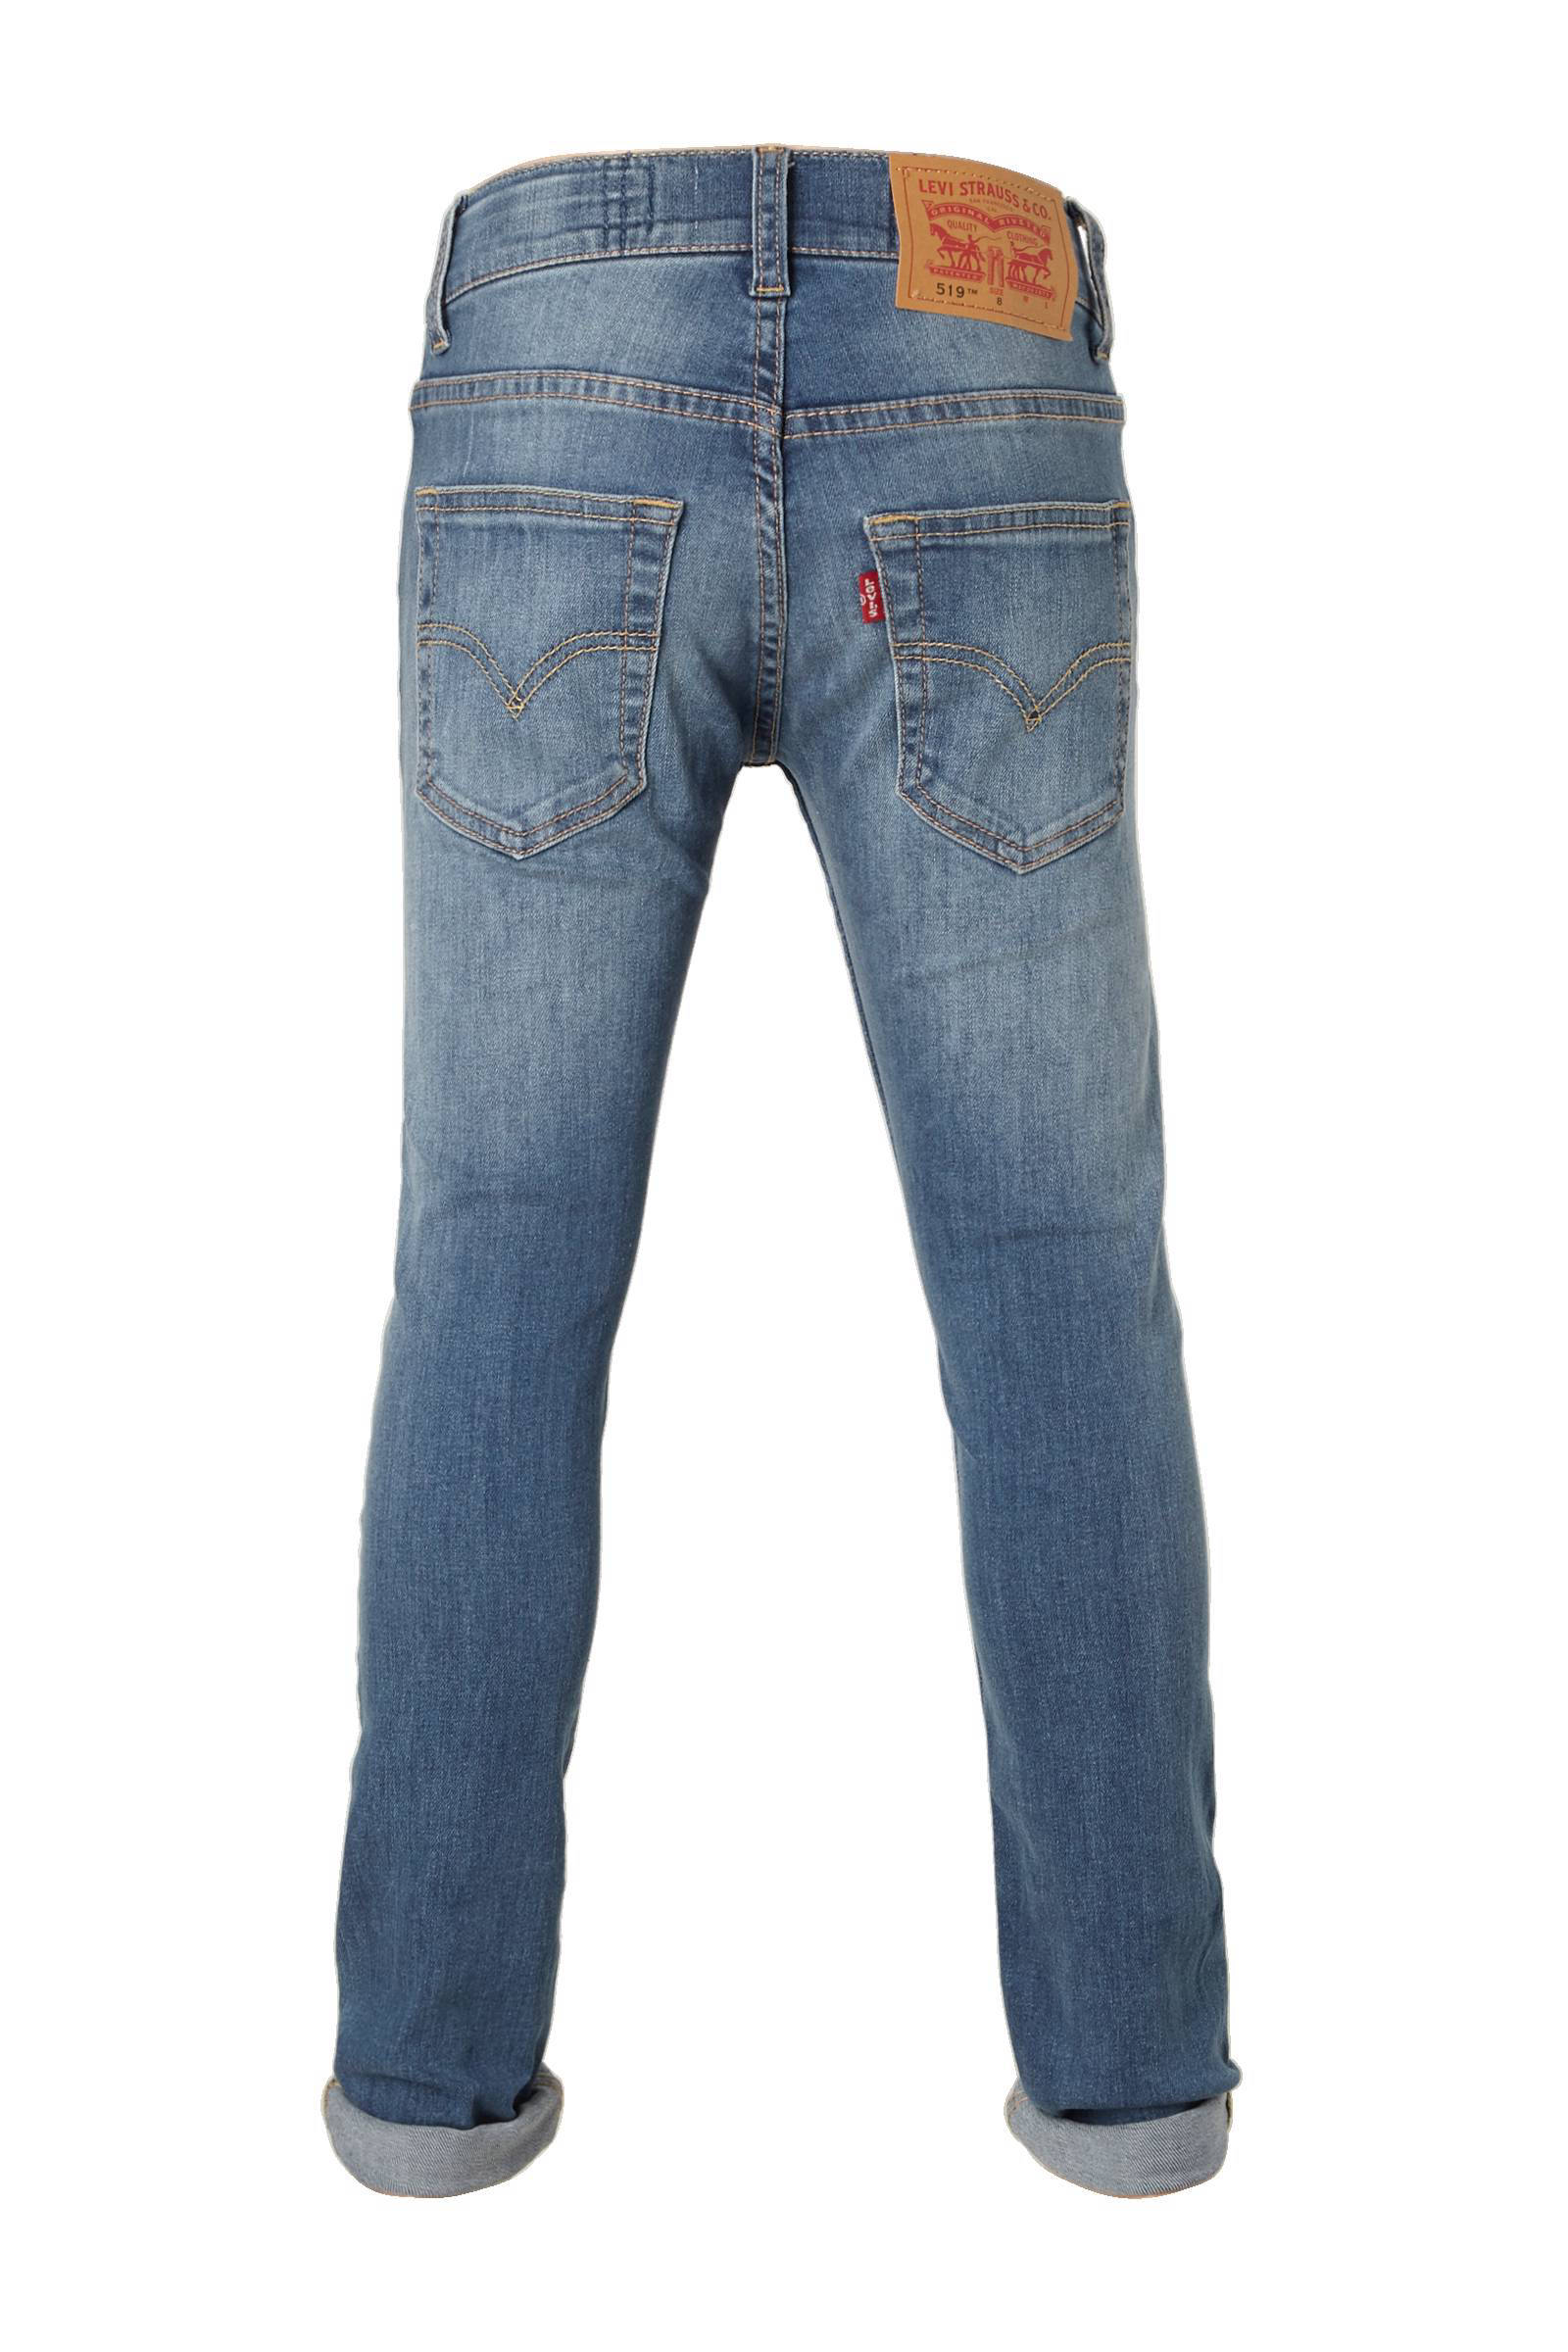 levis infant jeans